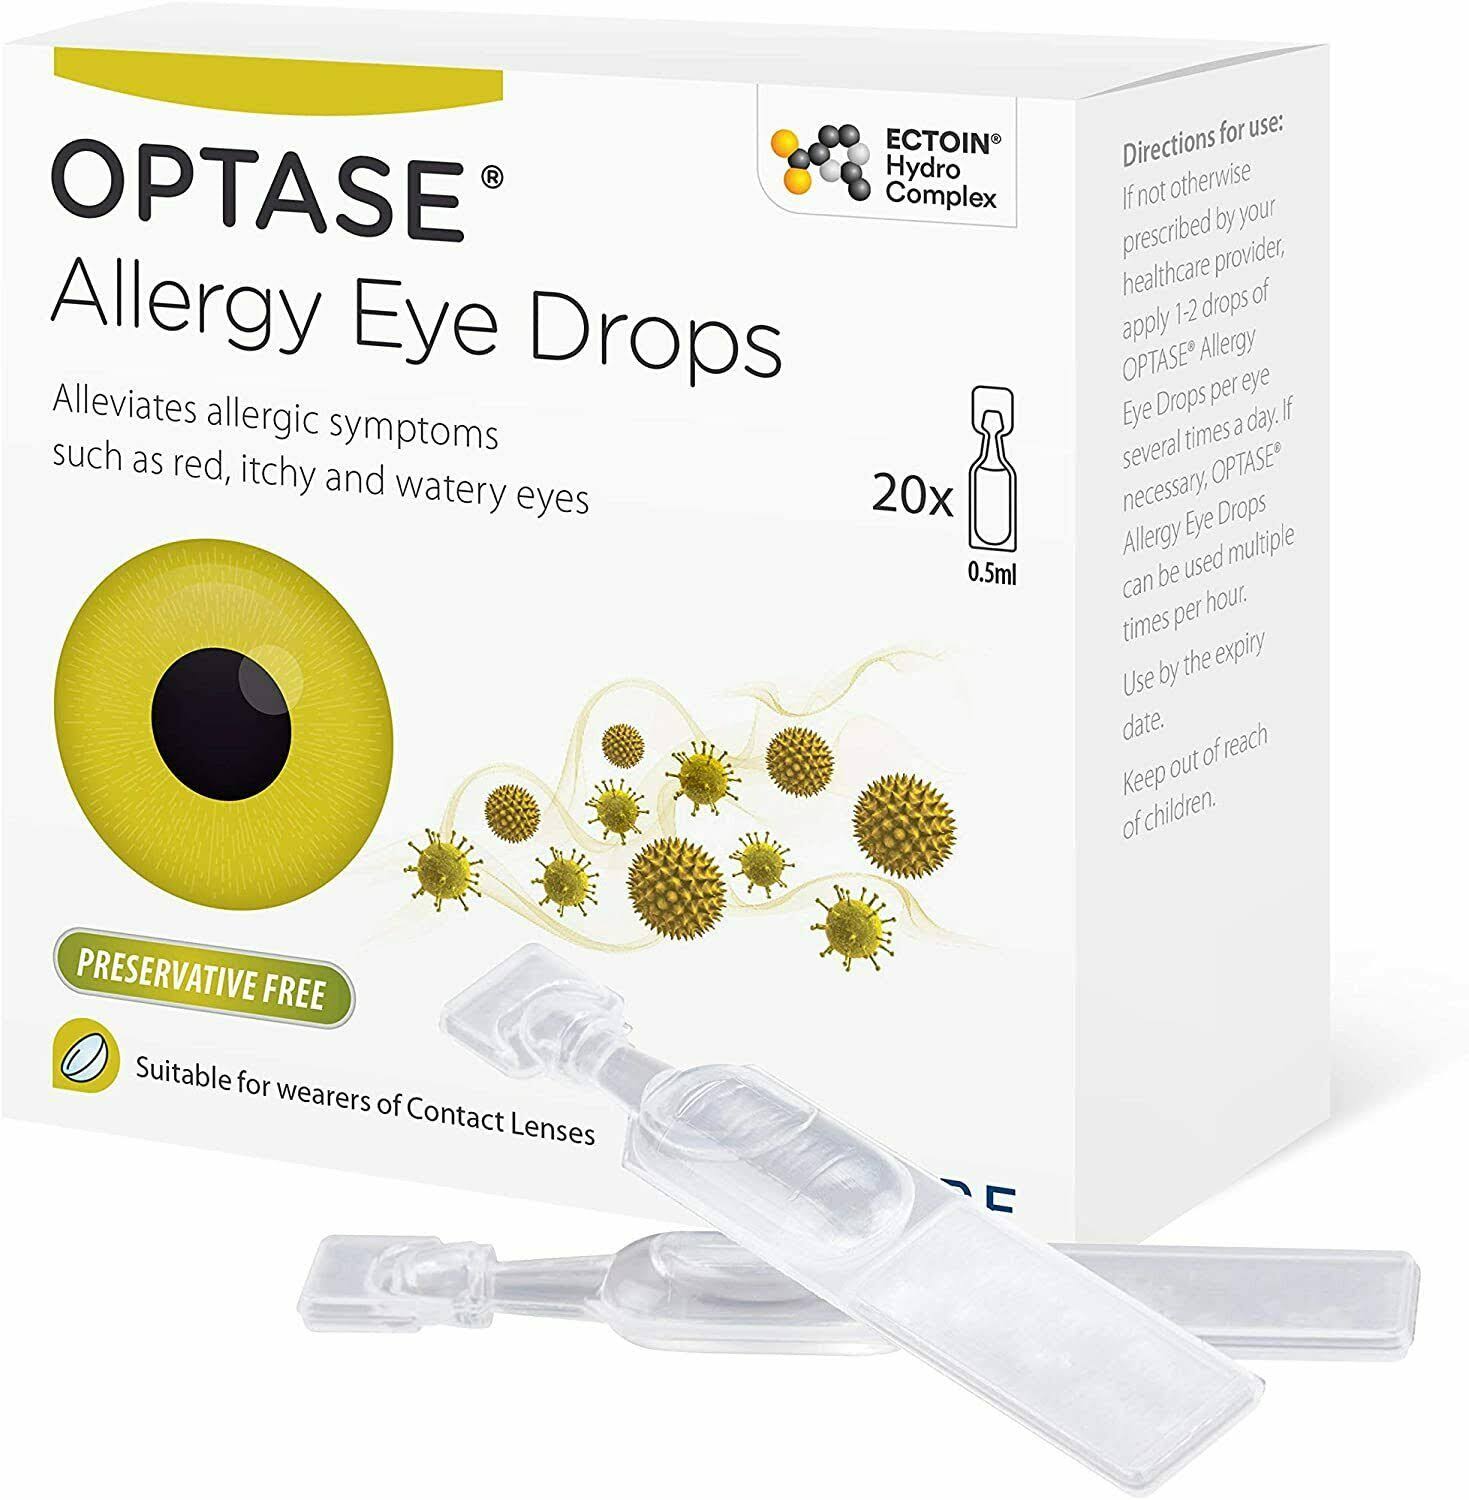 'Optase Allergy Eye Drops'